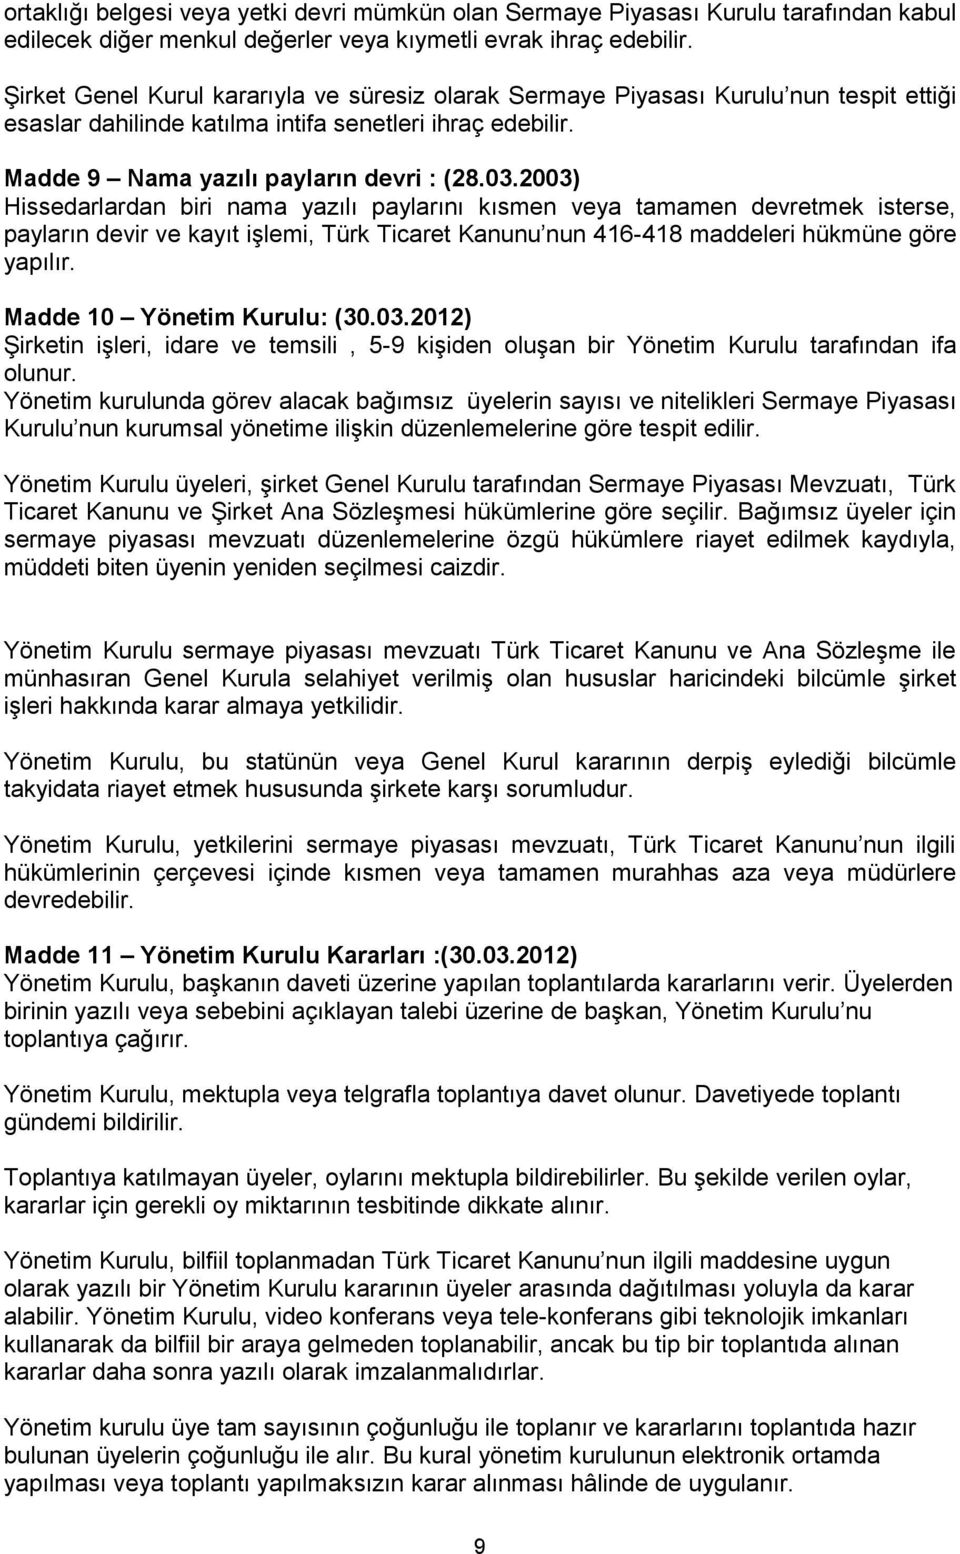 2003) Hissedarlardan biri nama yazılı paylarını kısmen veya tamamen devretmek isterse, payların devir ve kayıt işlemi, Türk Ticaret Kanunu nun 416-418 maddeleri hükmüne göre yapılır.